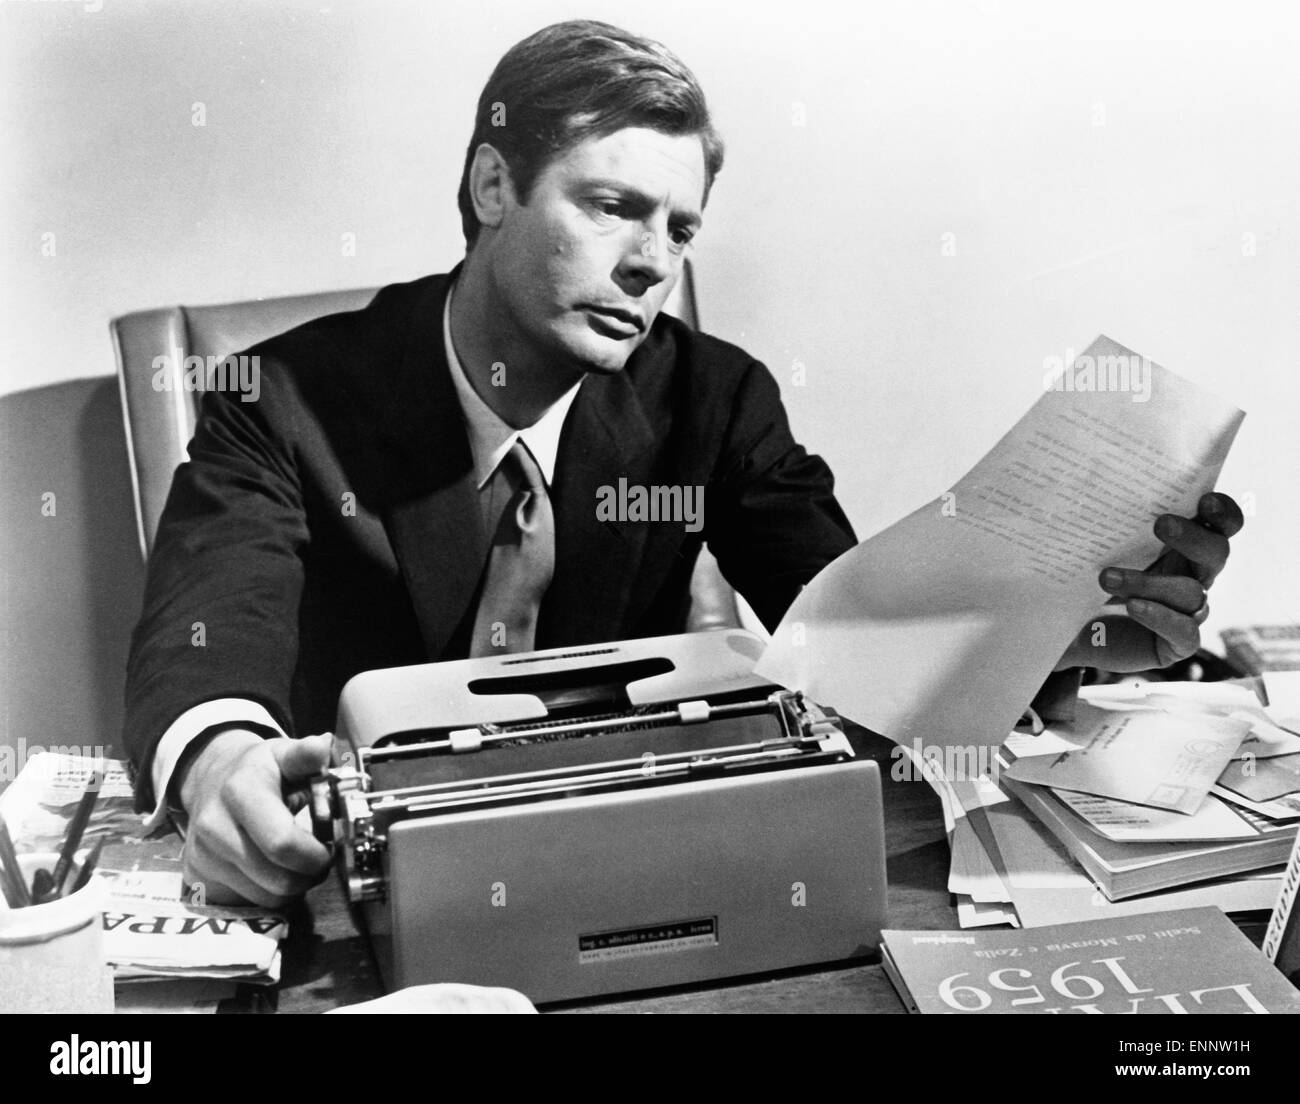 Der italienische Schauspieler Marcello Mastroianni am Schreibtisch im Jahr 1960. Stock Photo